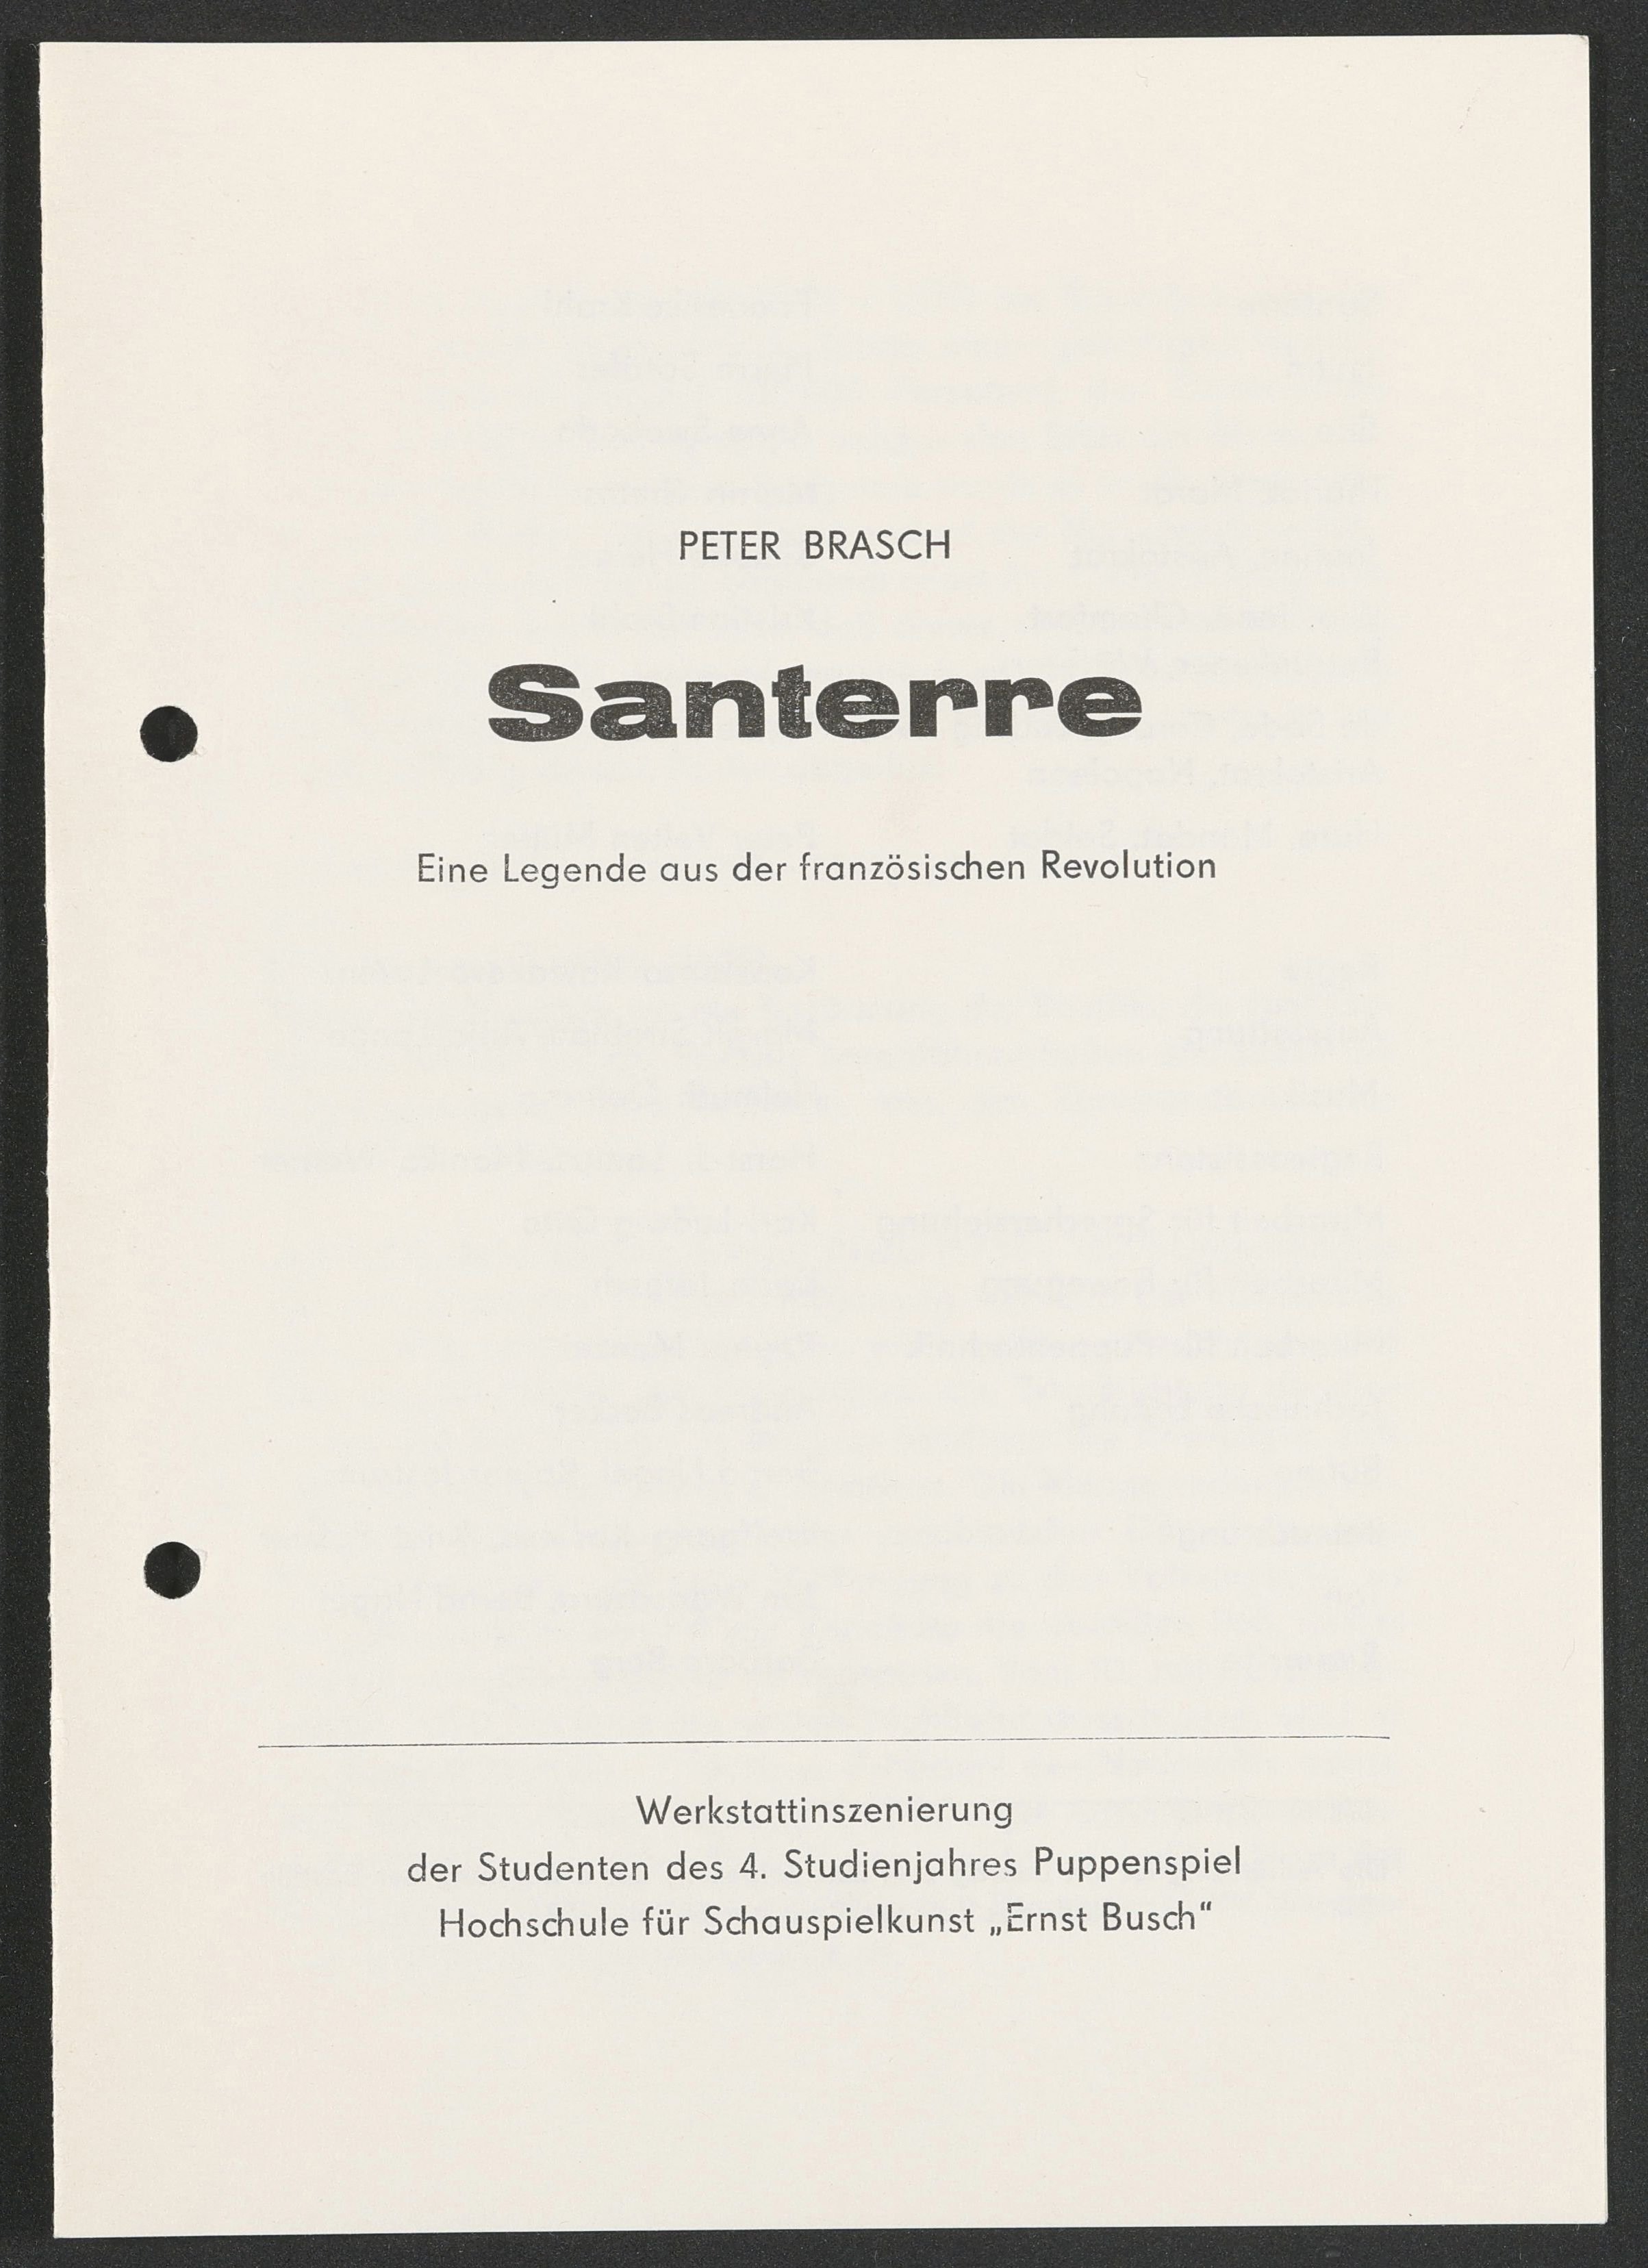 Programmheft zu "Santerre – Eine Legende aus der französischen Revolution" am bat-Studiotheater 1989 (Hochschule für Schauspielkunst Ernst Busch Berlin RR-F)